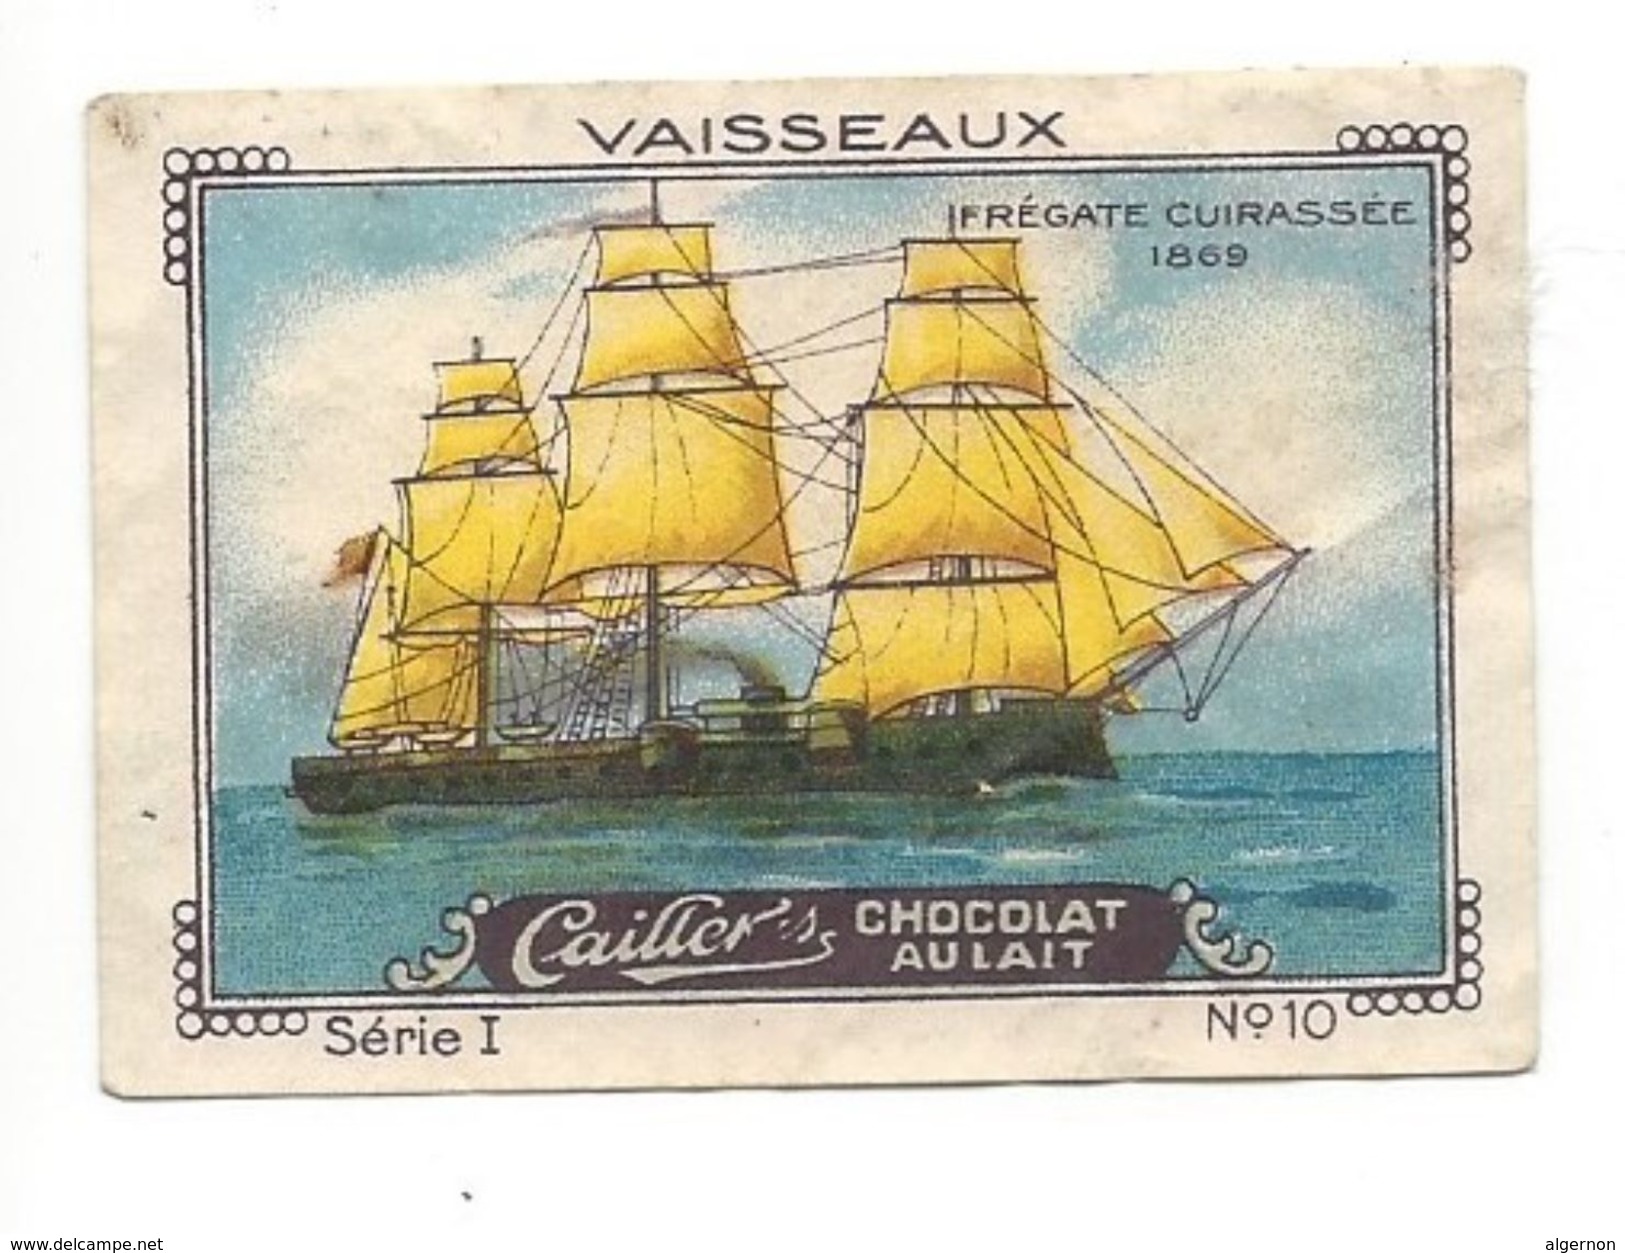 V20 - Chocolats Nestlé Peter Cailler Kohler Vaisseaux Frégate Cuirassée 1869 Vignette Publicitaire - Advertising